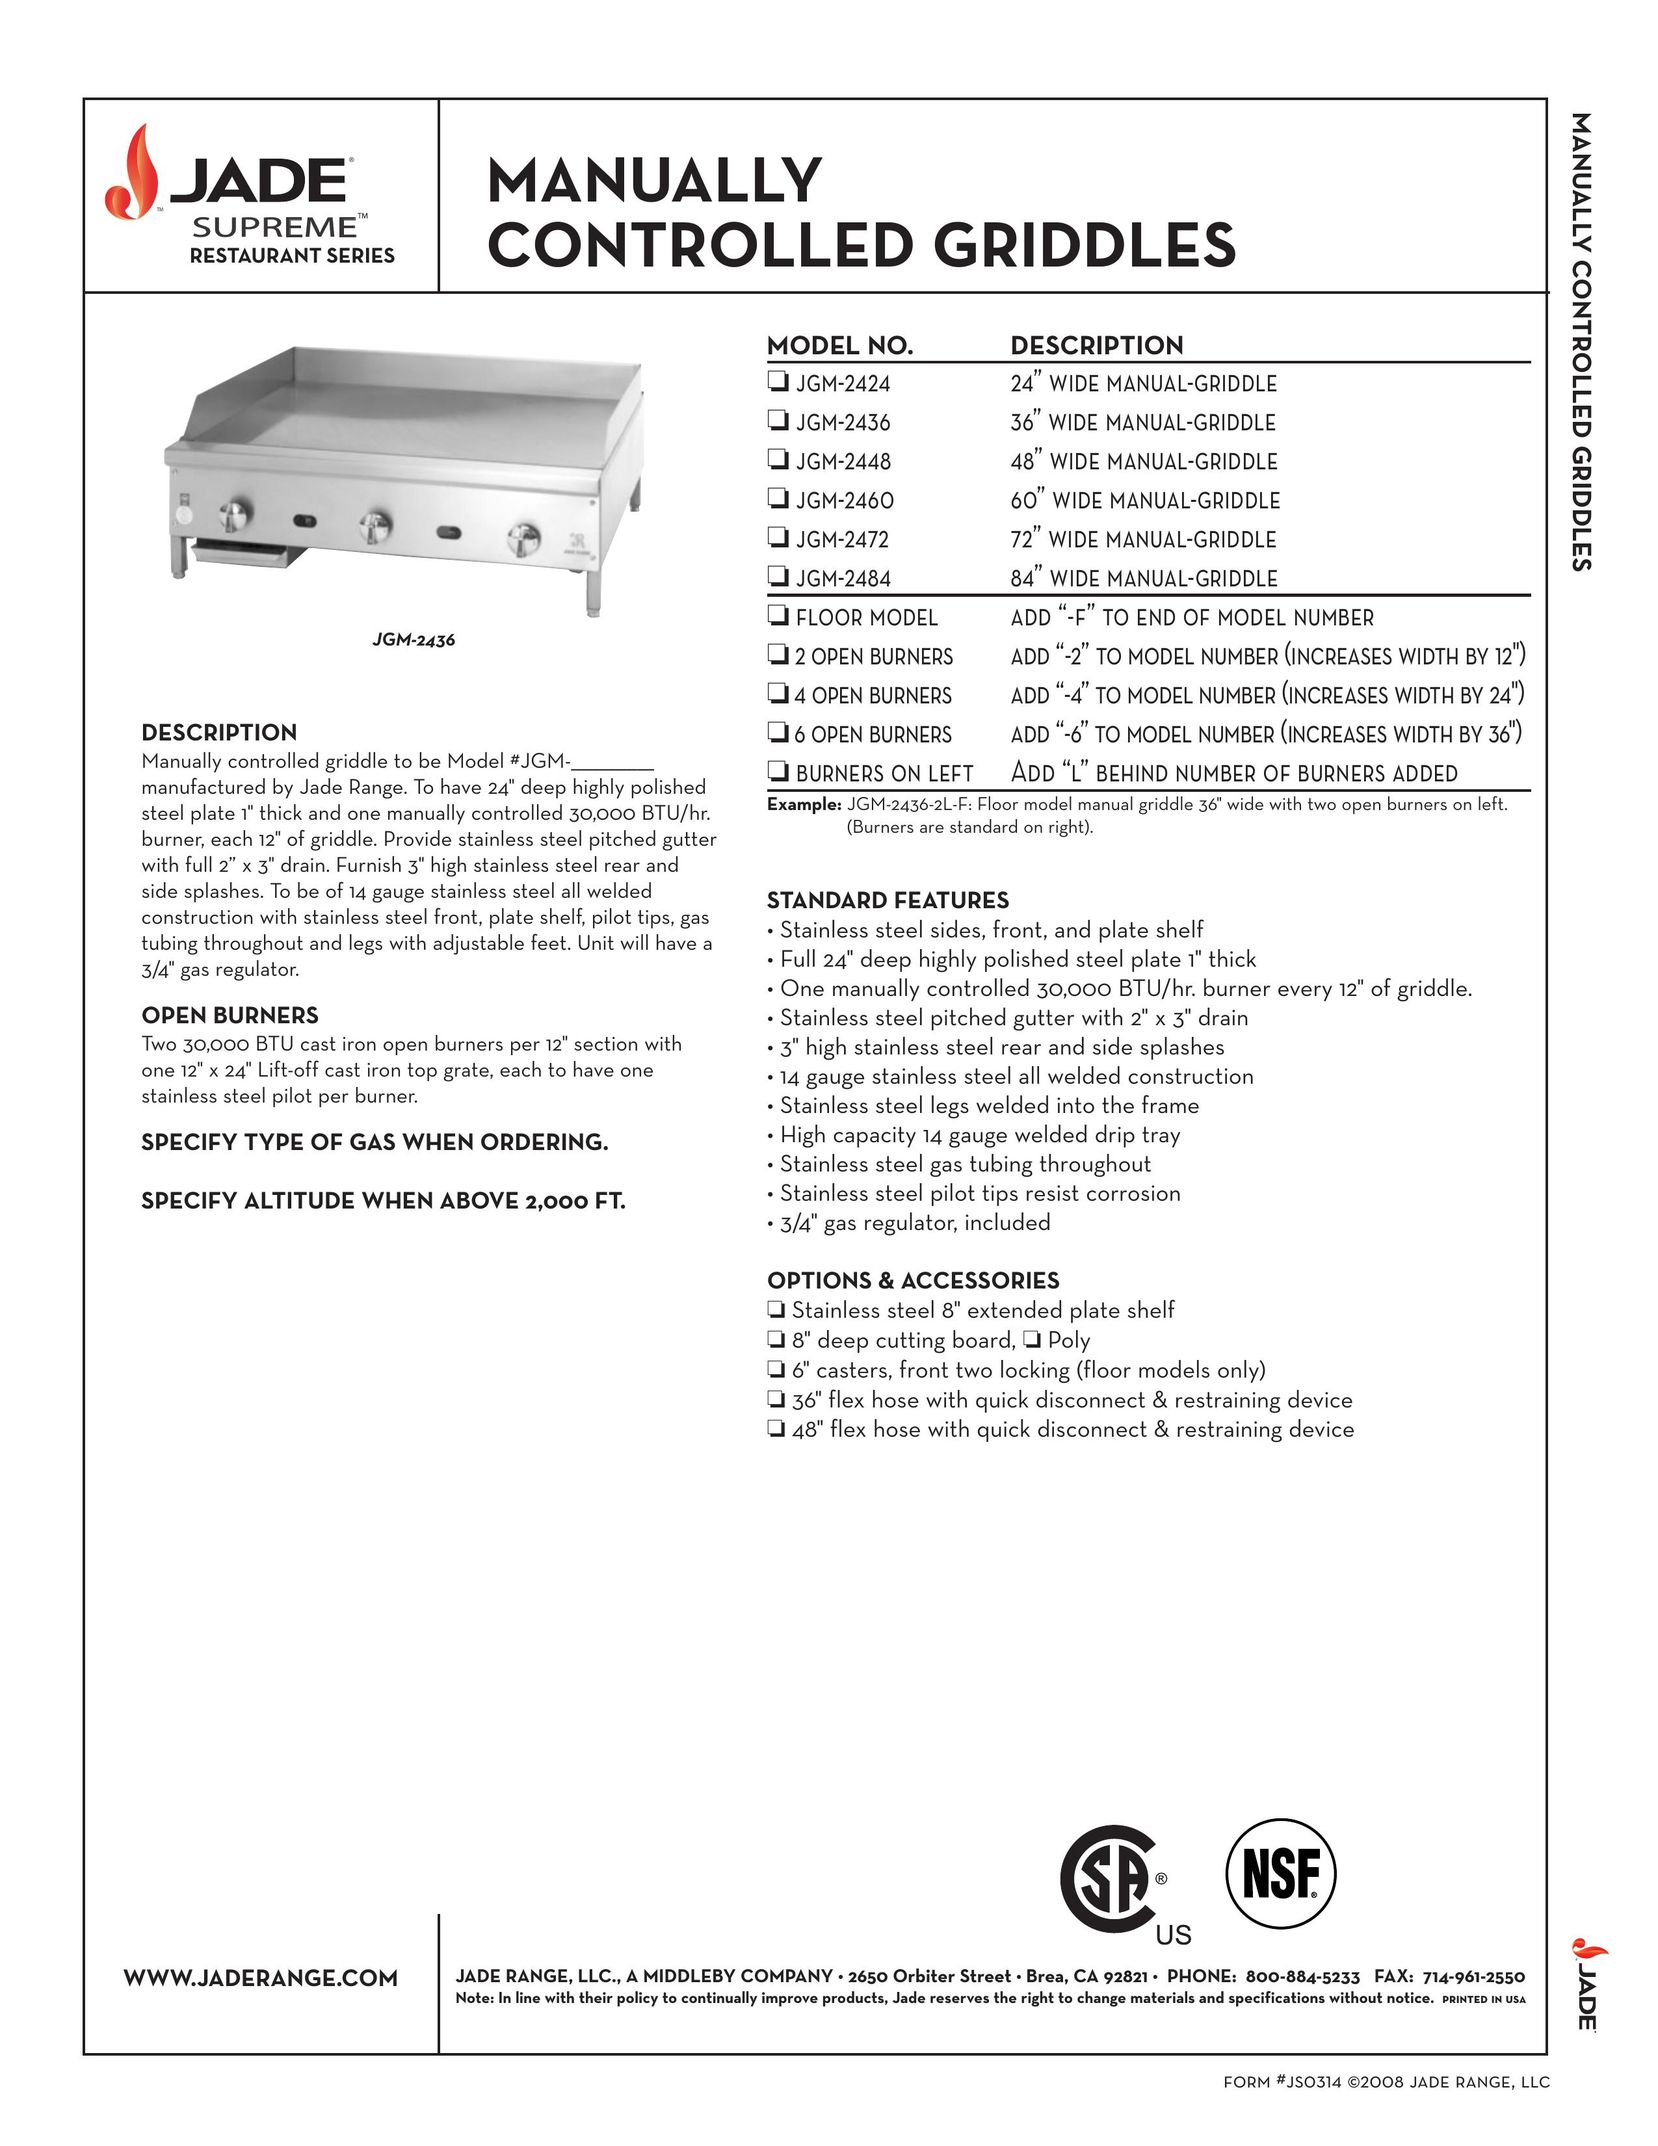 Jade Range JGM-2472 Griddle User Manual